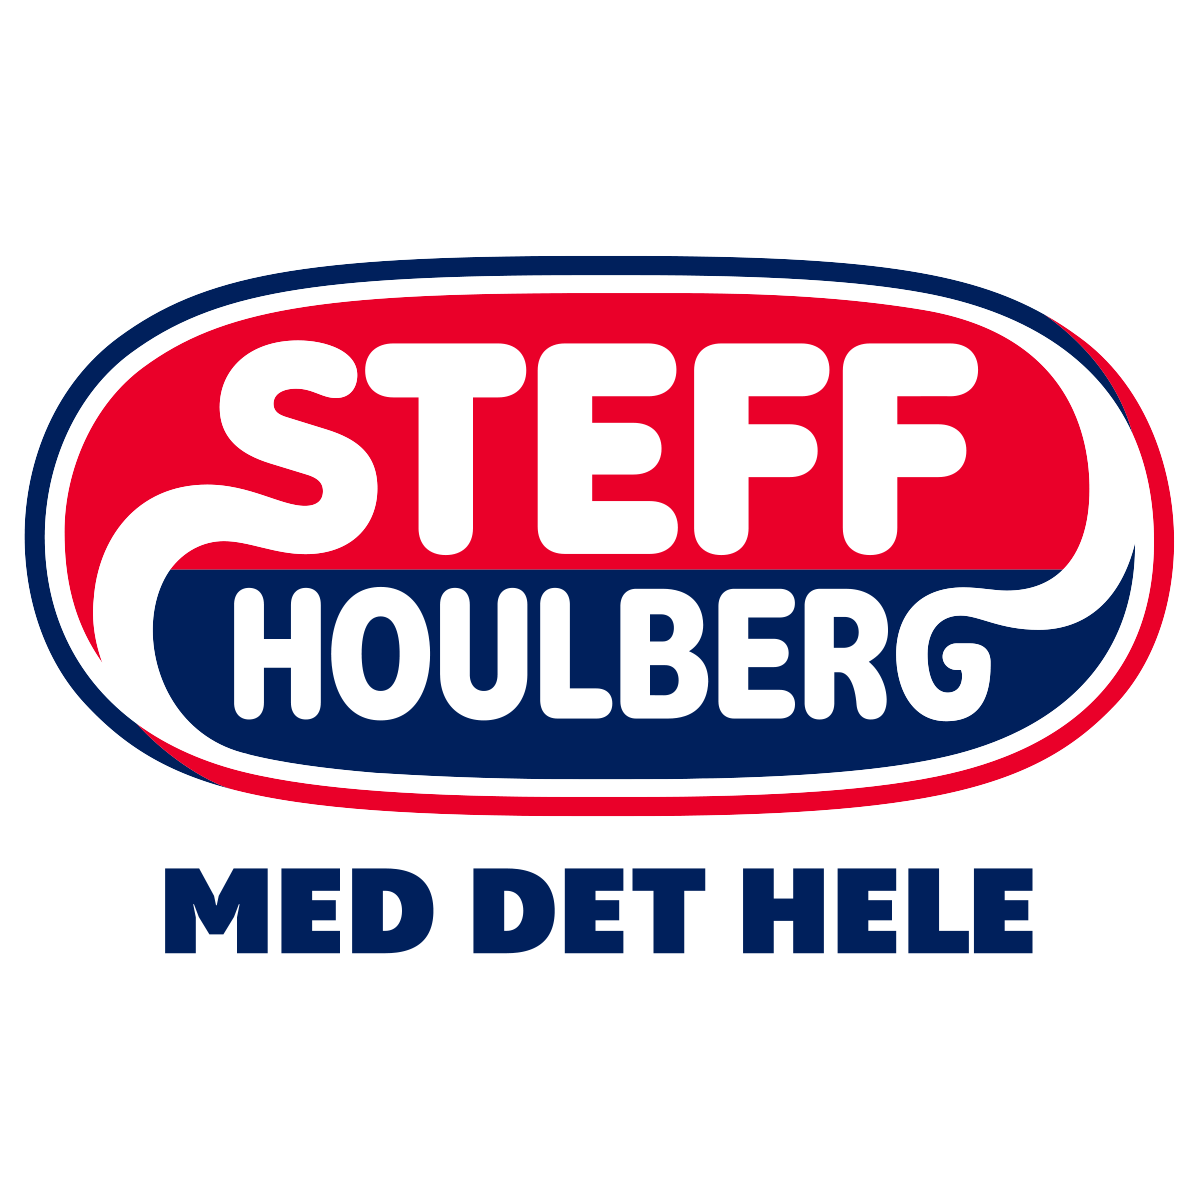 Steff Houlberg